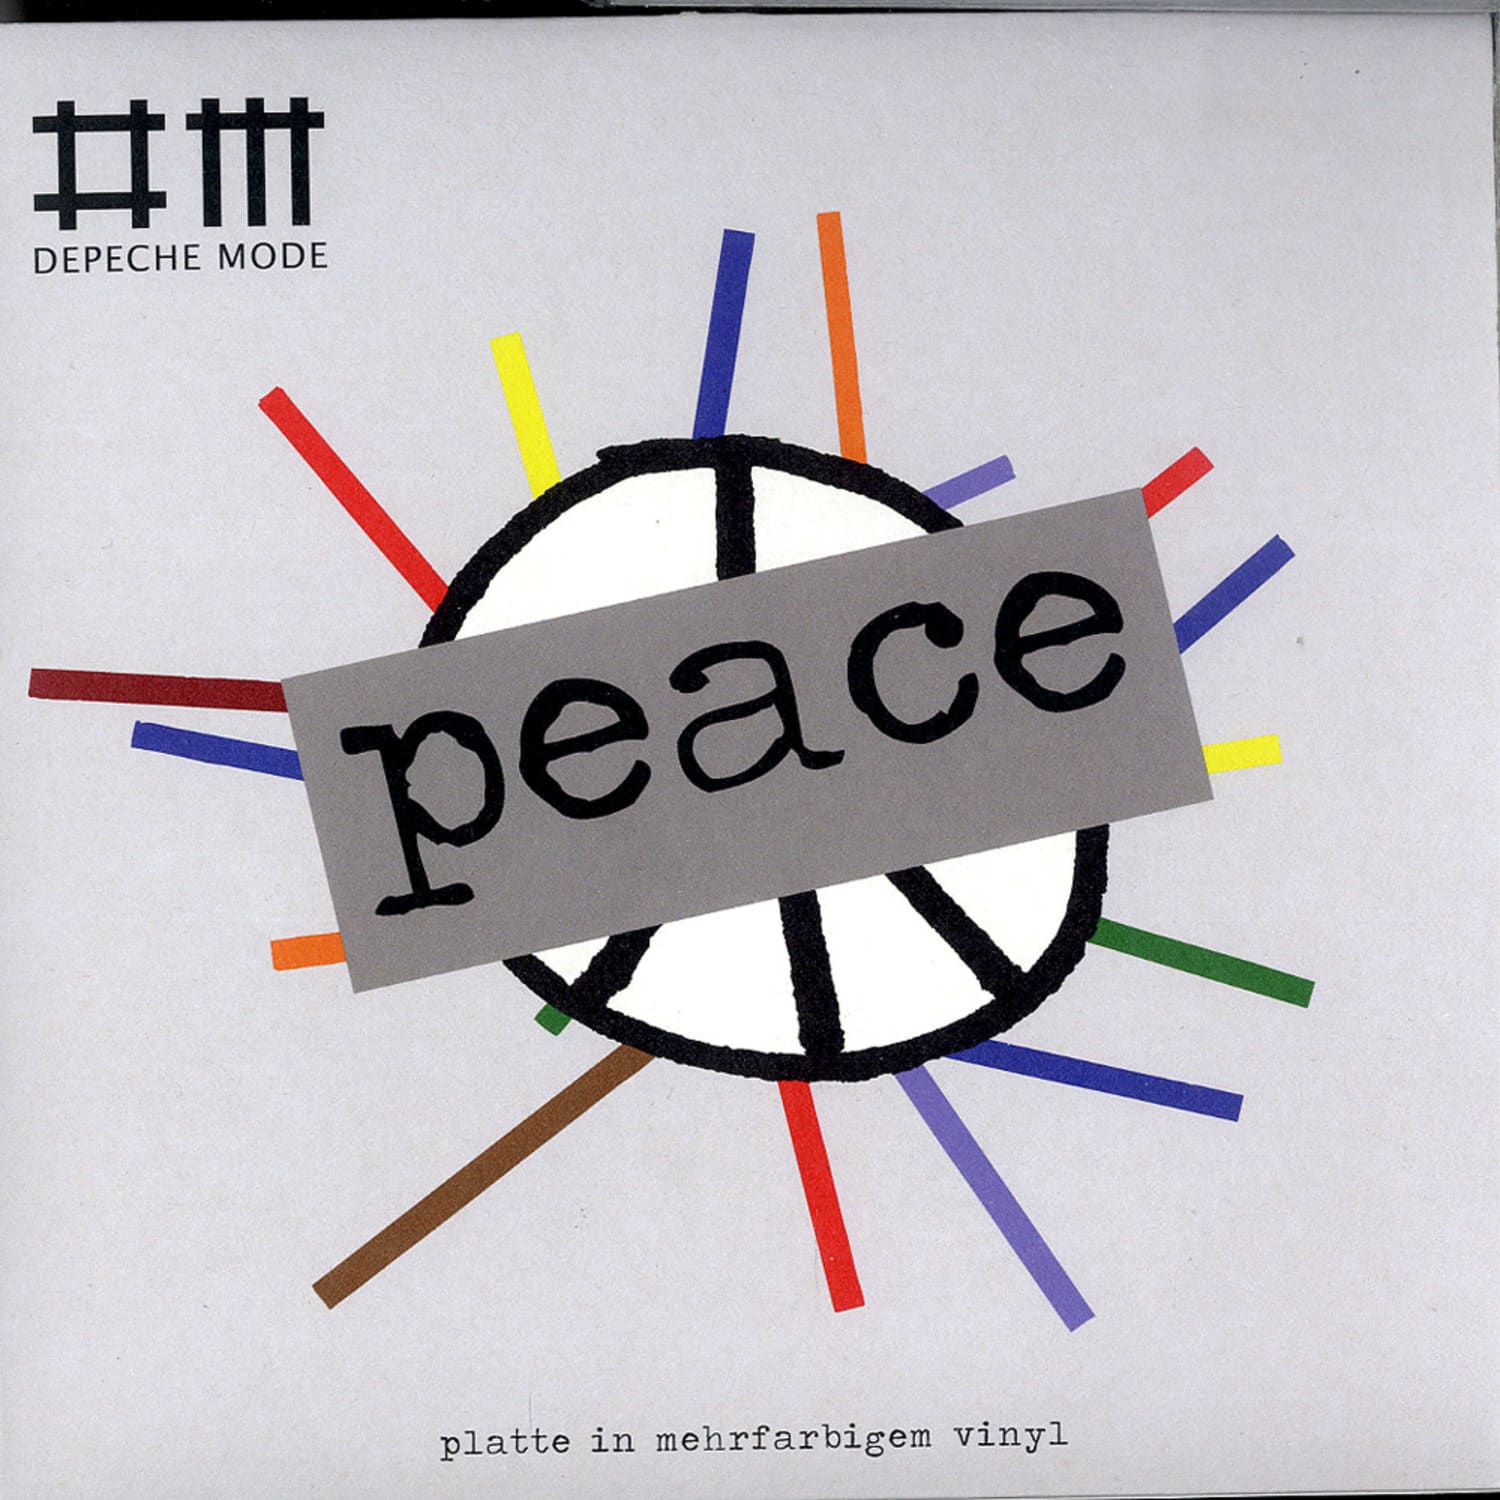 Depeche Mode - PEACE 